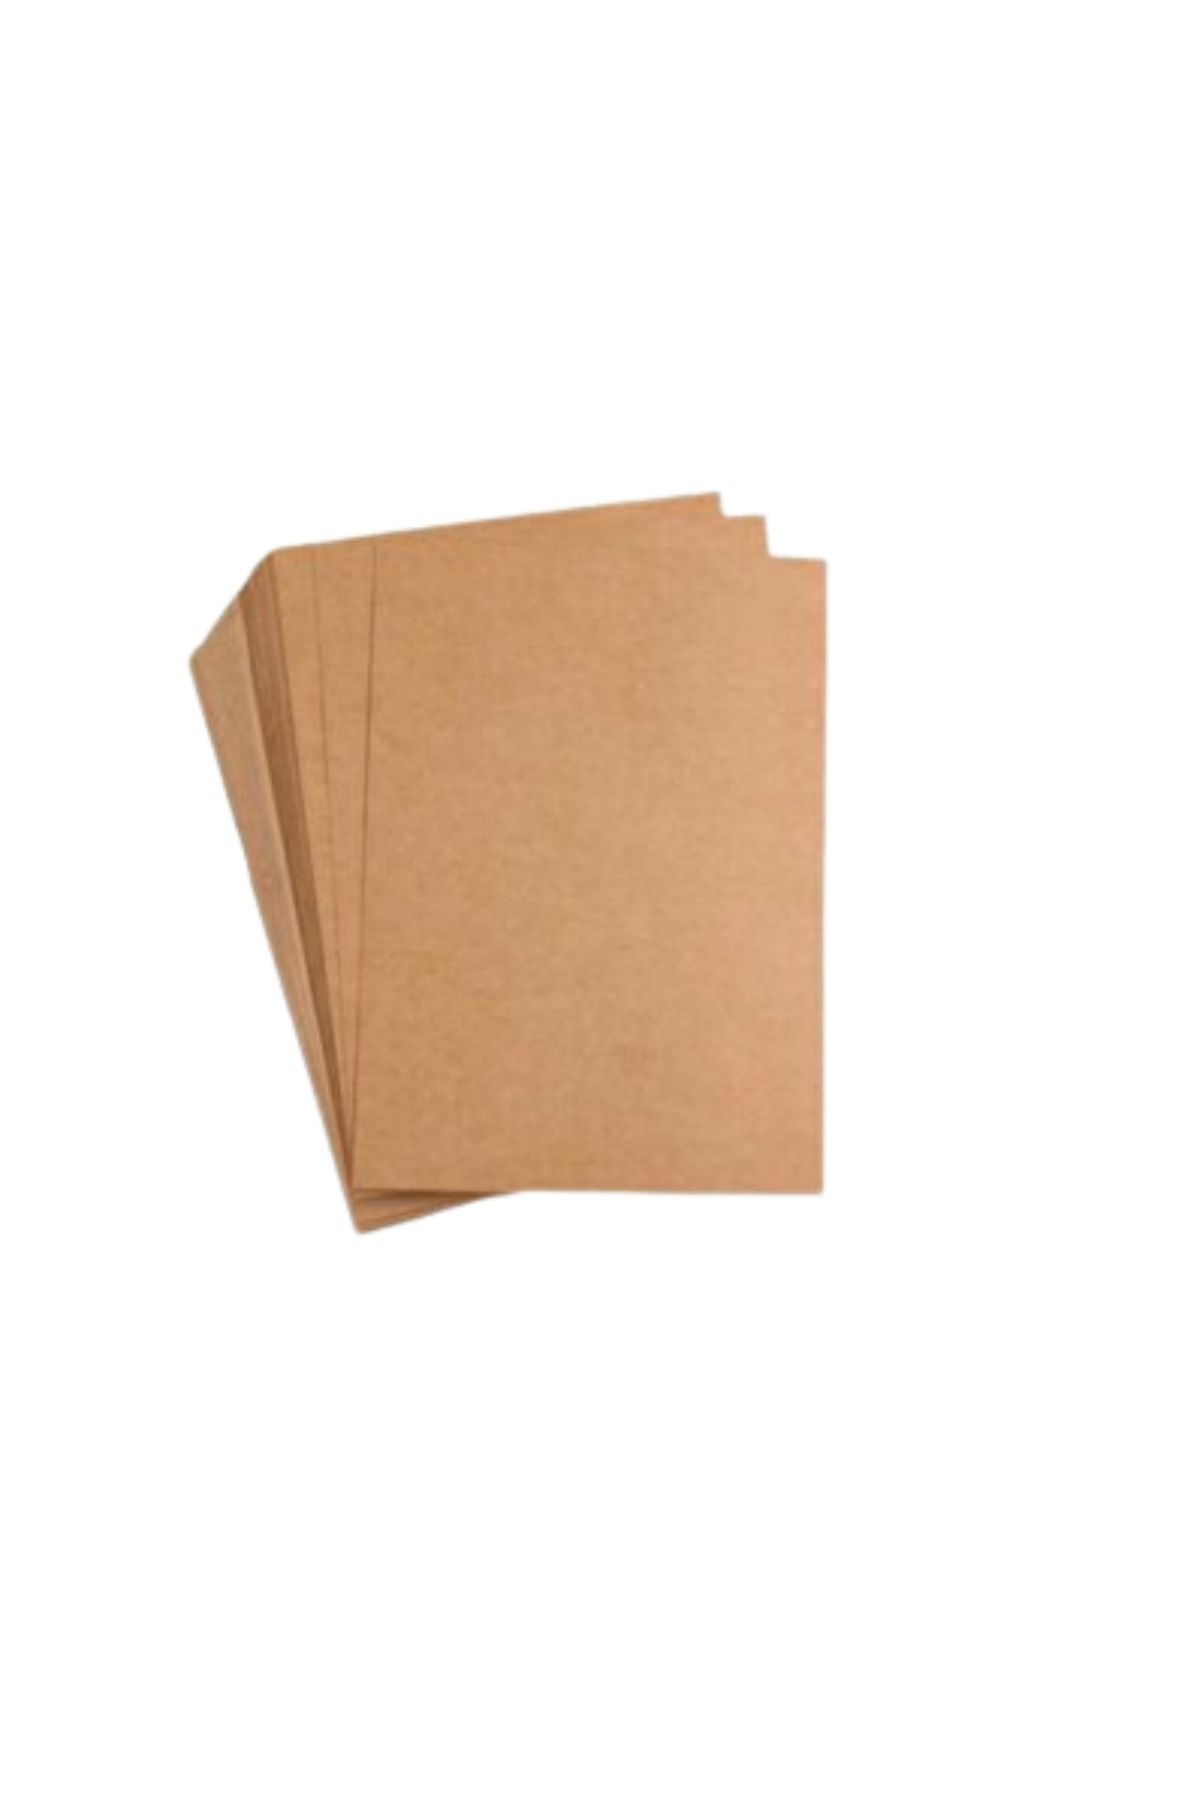 İhtiyaç Limanı Kraft Kağıt 40*30 100 Adet Gönderi Ambalaj Çeyiz Paketleme Kargo Kağıdı 100 Adet